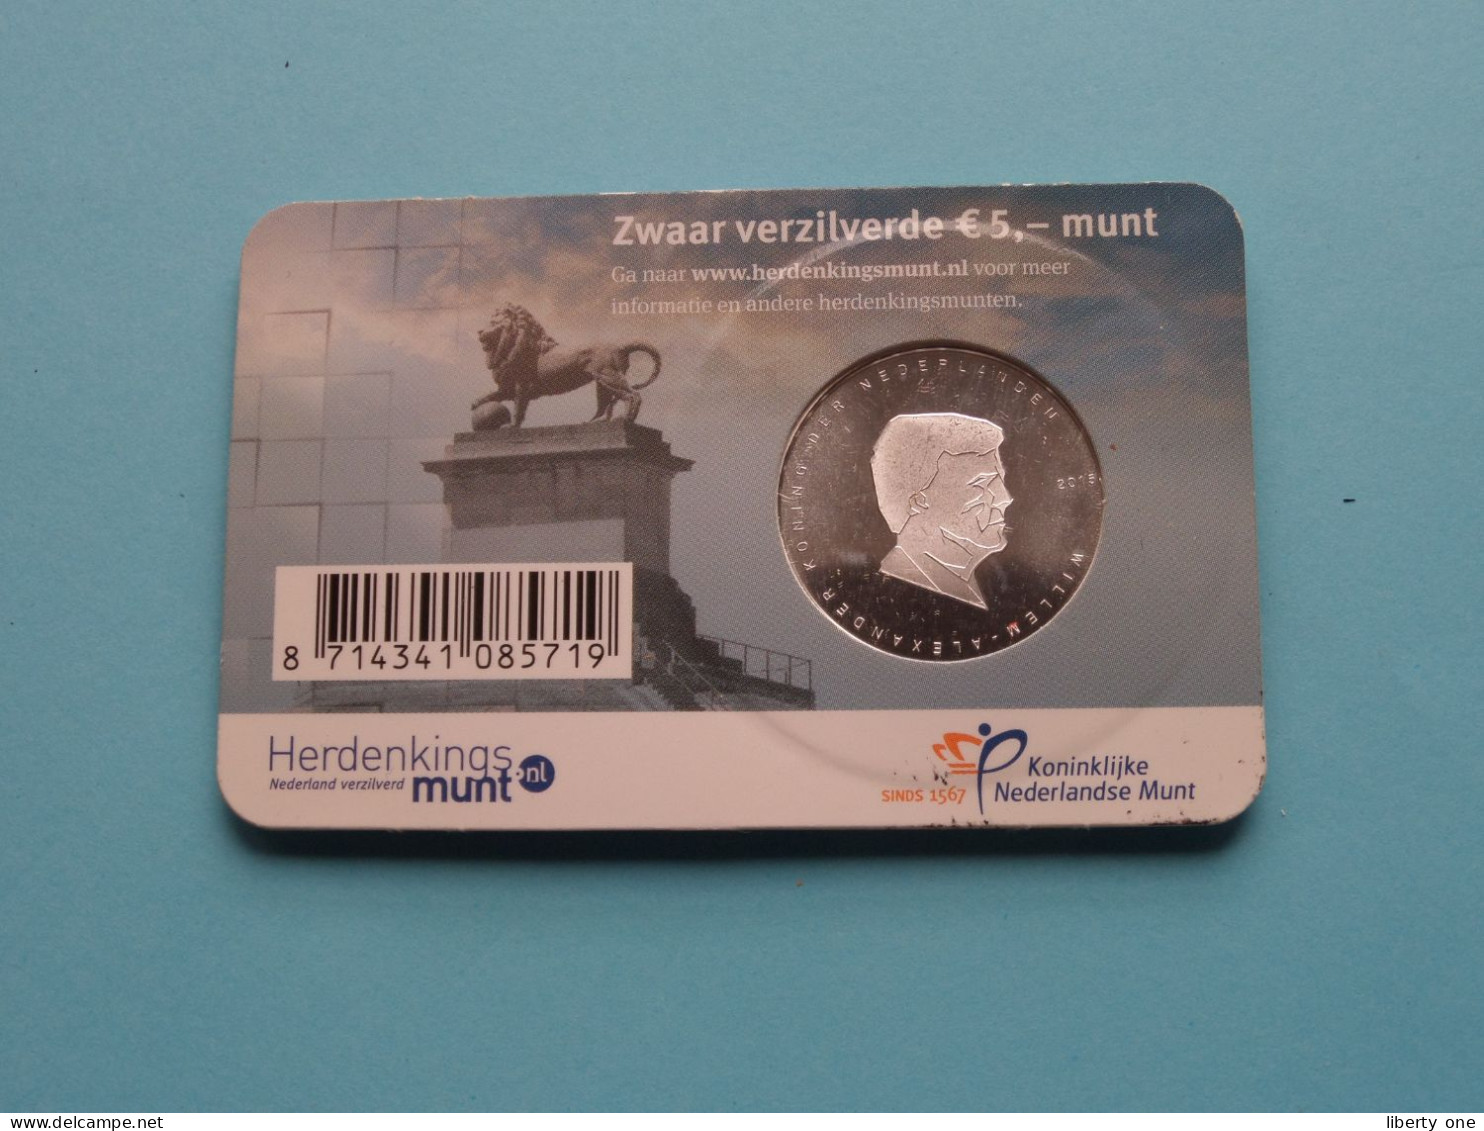 Het WATERLOO Vijfje > Officiële Herdenkingsmunt 2015 - 5 Euro ( Zie / Voir / See > DETAIL > SCANS ) ! - Niederlande